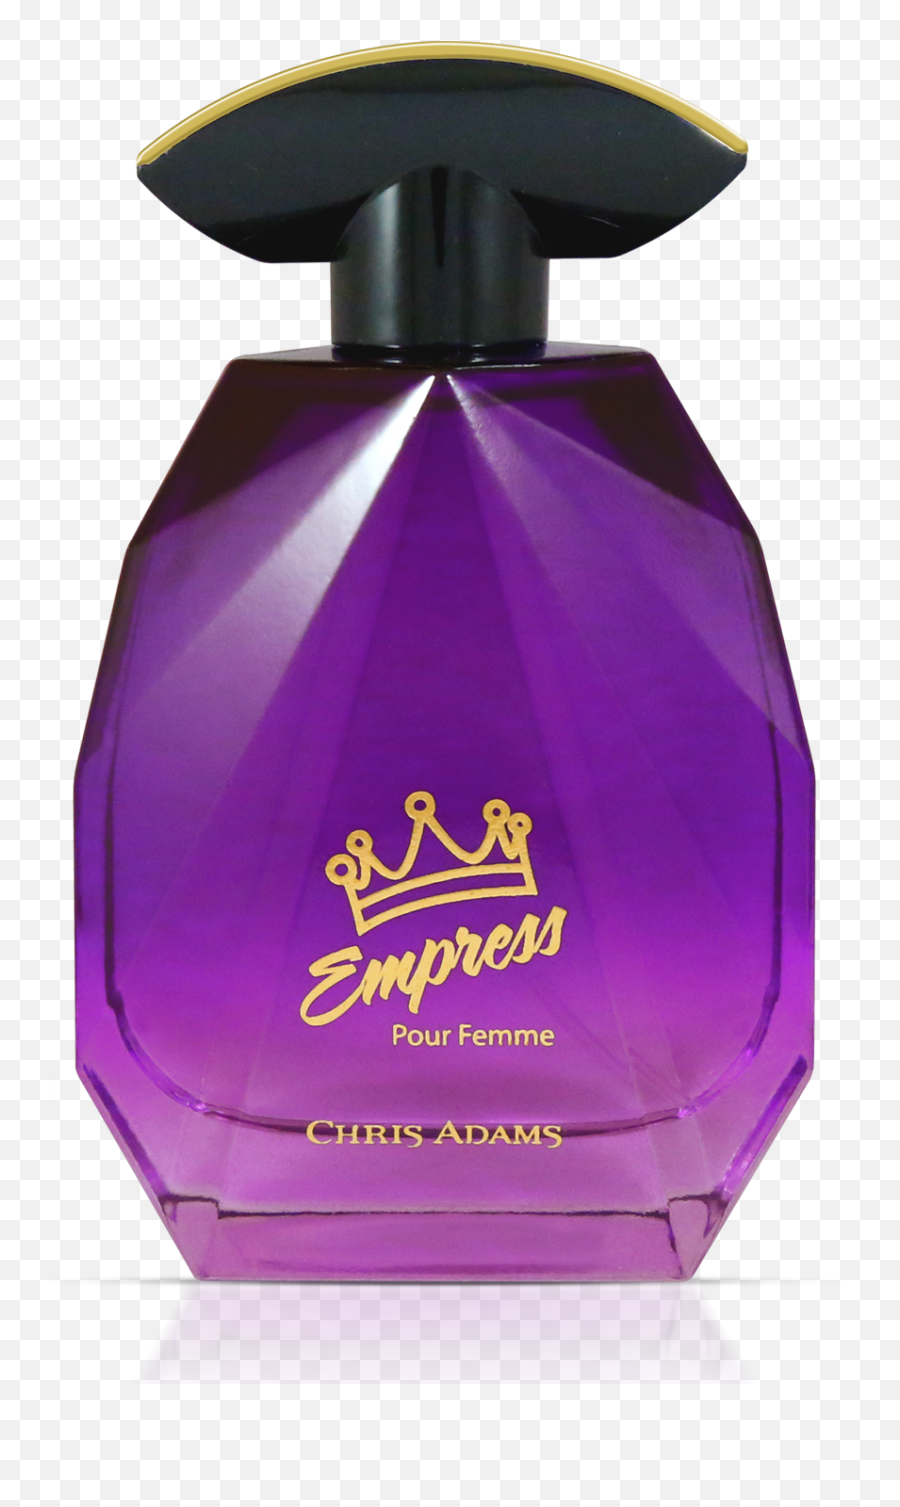 Empress Pour Femme - Chris Adams Empress Perfume Emoji,Emotion Leaf Friendship Violet